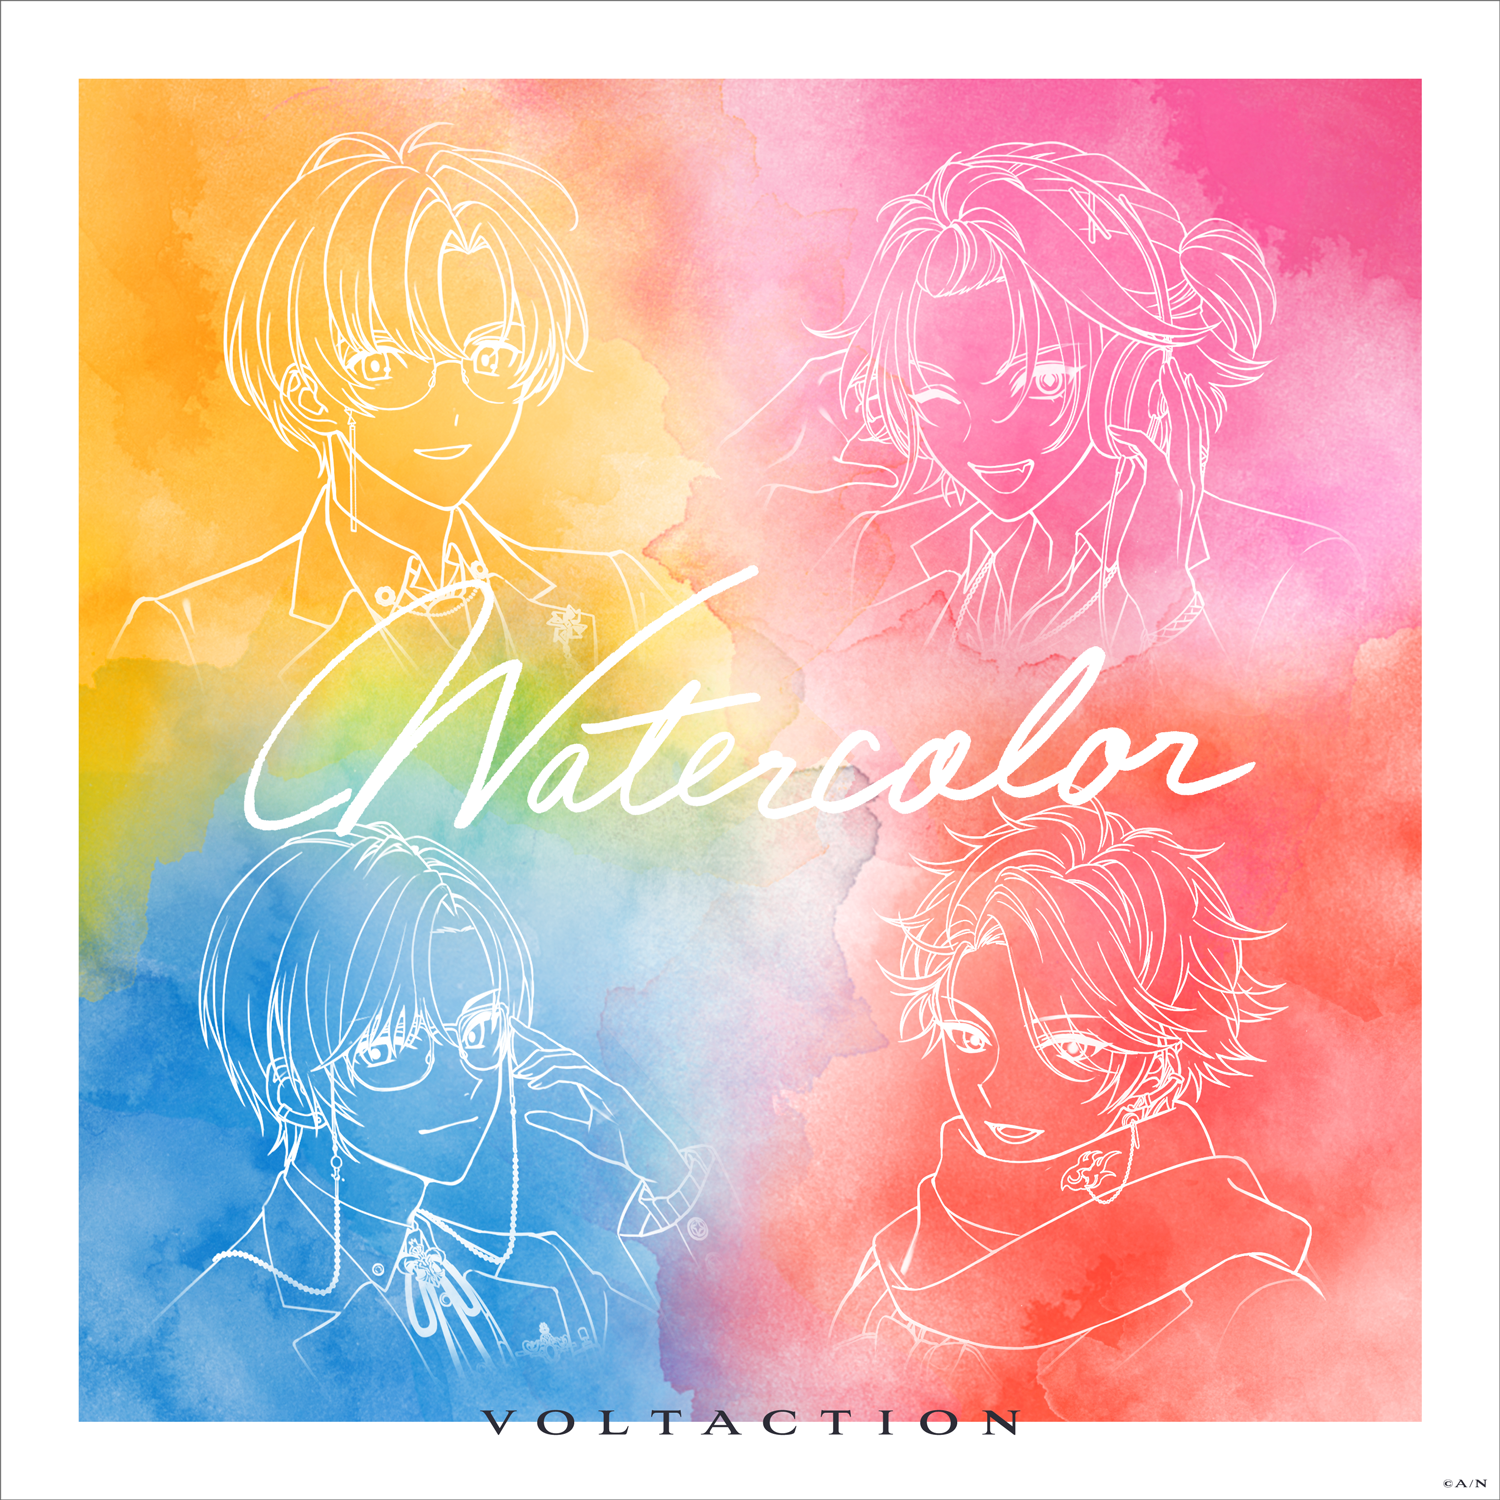 にじさんじ所属の人気VTuberユニット・VOLTACTIONの2ndオリジナル楽曲